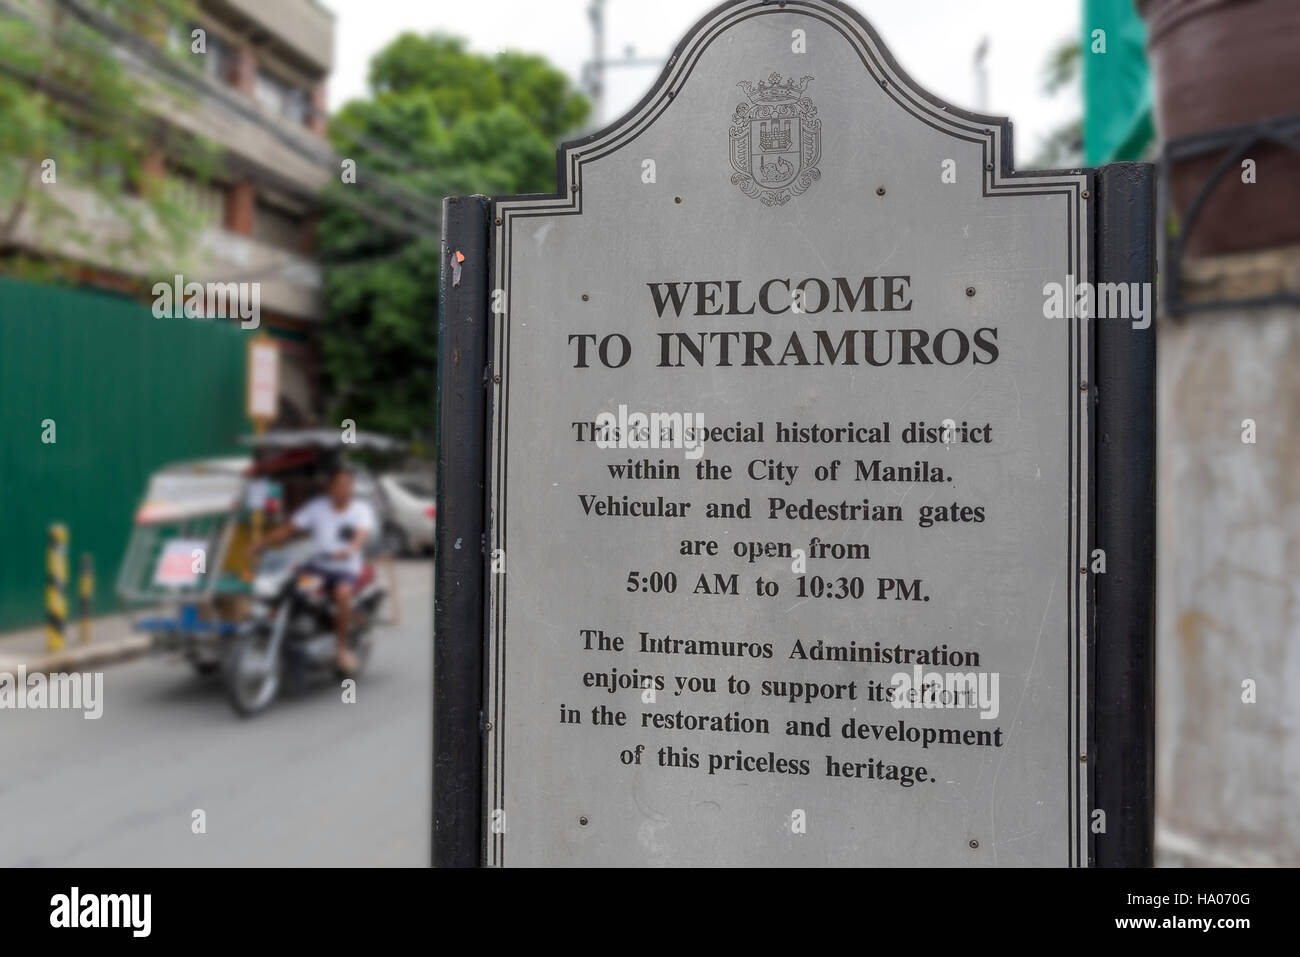 Benvenuto a Intramuros. Segno accoglie i visitatori di Intramuros, una storica zona fortificata di Manila Phiippines Foto Stock